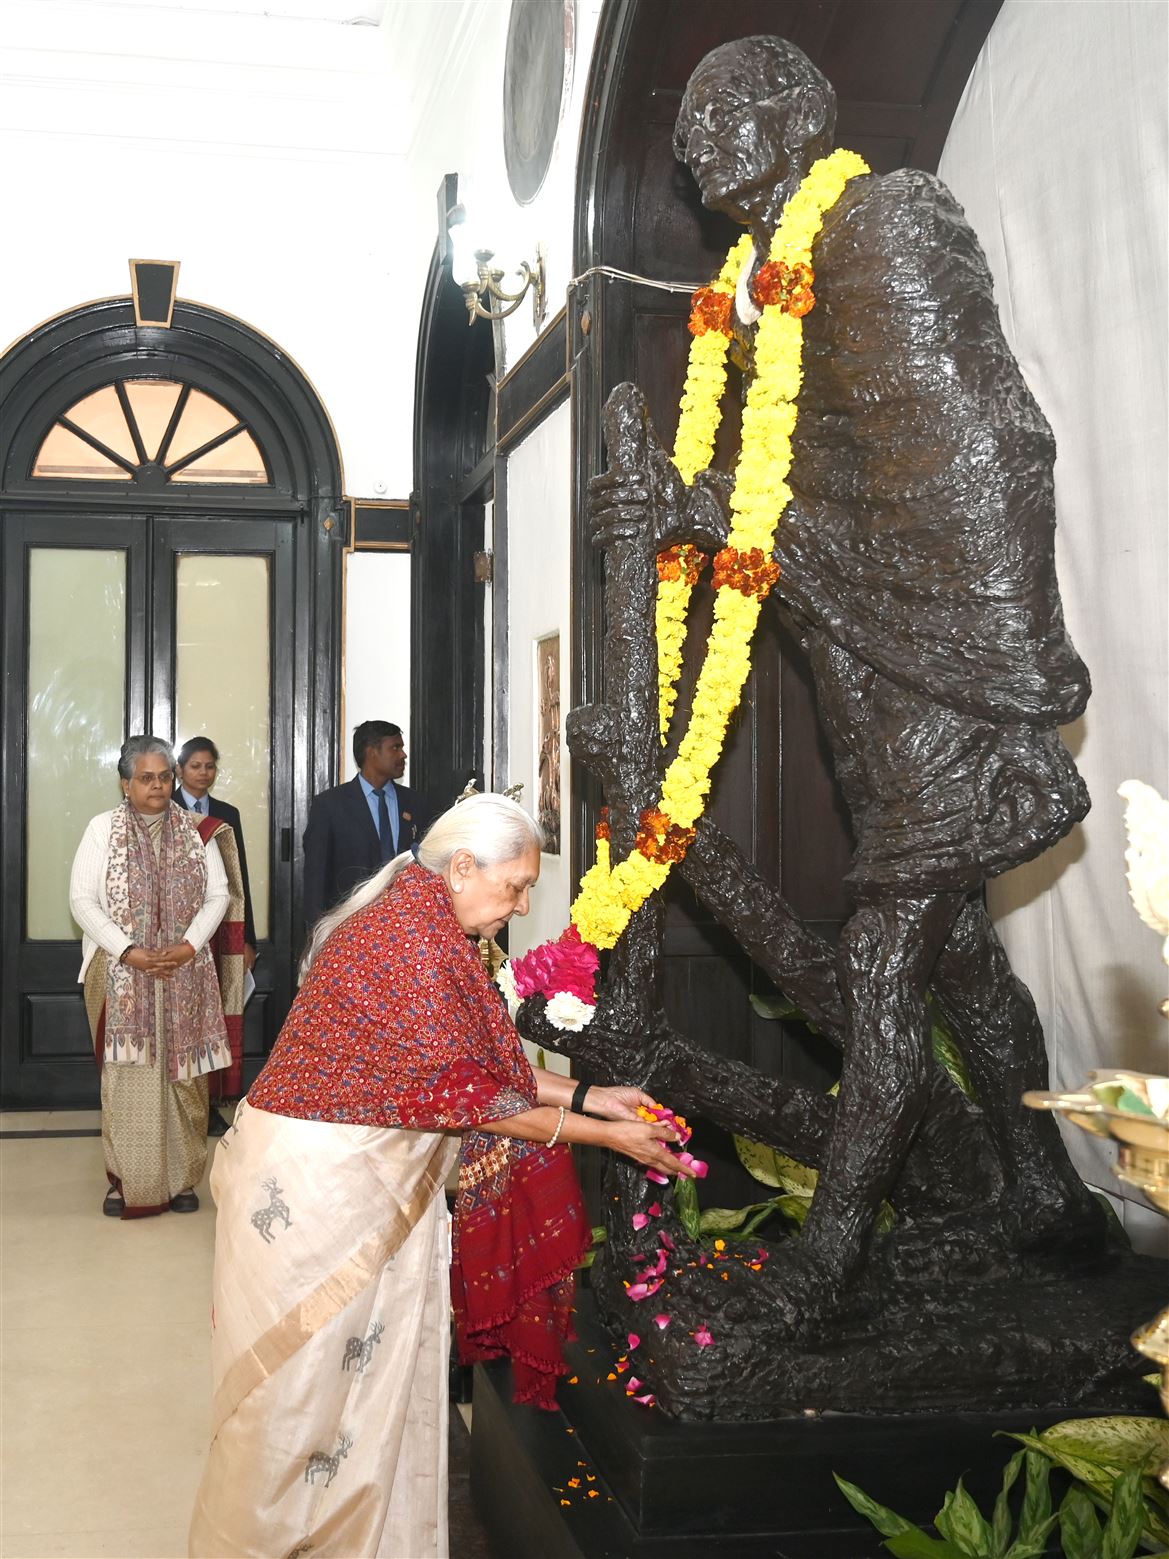 On Martyrs’ Day, the Governor paid tribute to Mahatma Gandhi ji at Raj Bhavan/राज्यपाल ने शहीद दिवस पर महात्मा गांधी के चित्र पर राजभवन में श्रद्धांजलि अर्पित की